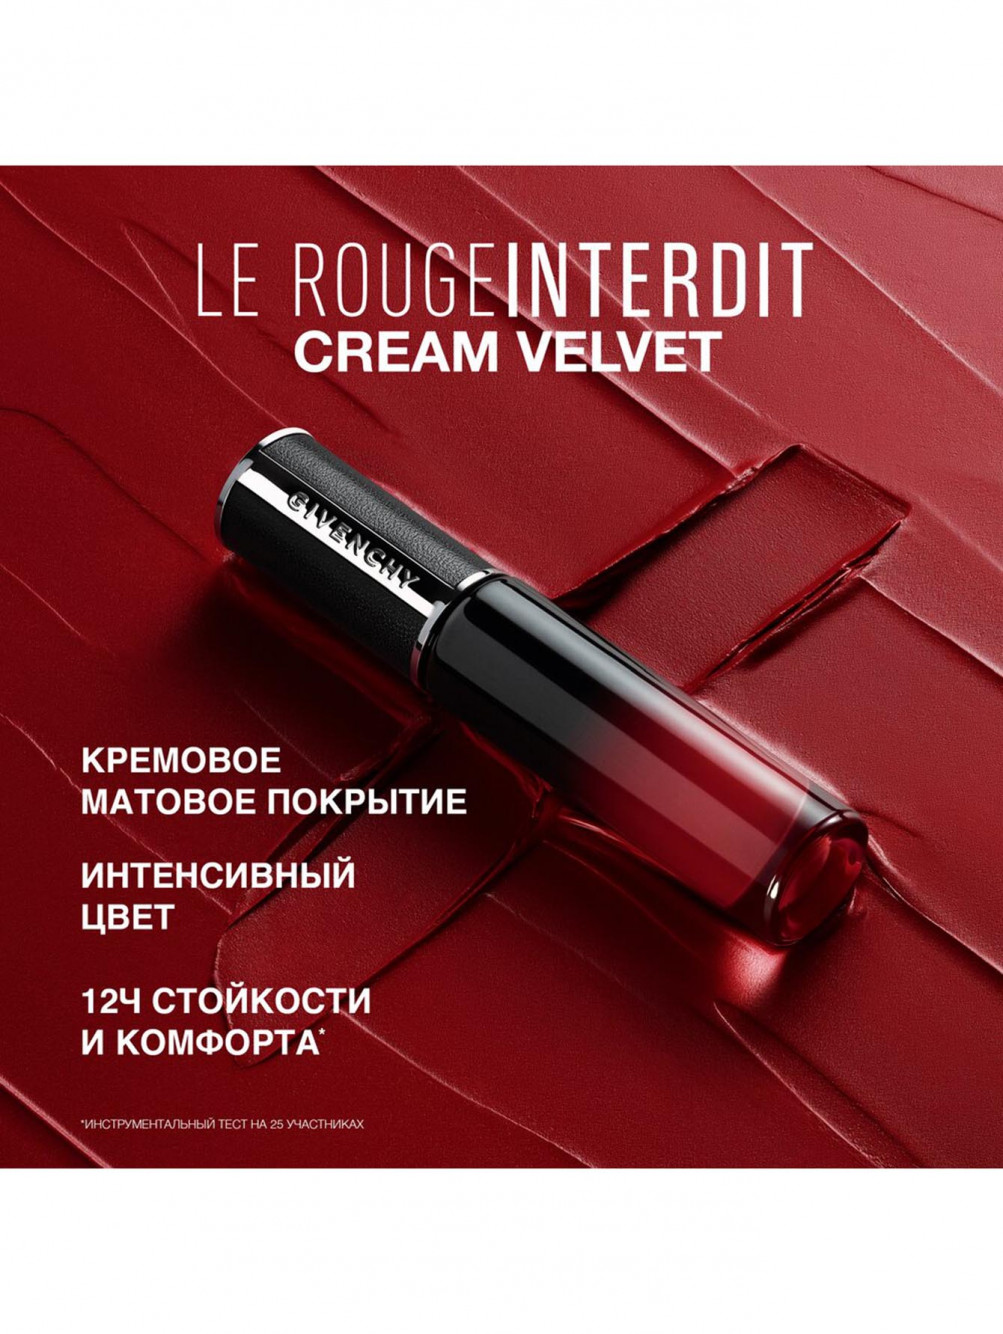 Жидкая матовая помада для губ Le Rouge Interdit Cream Velvet, оттенок 37, 6,5 мл - Обтравка4